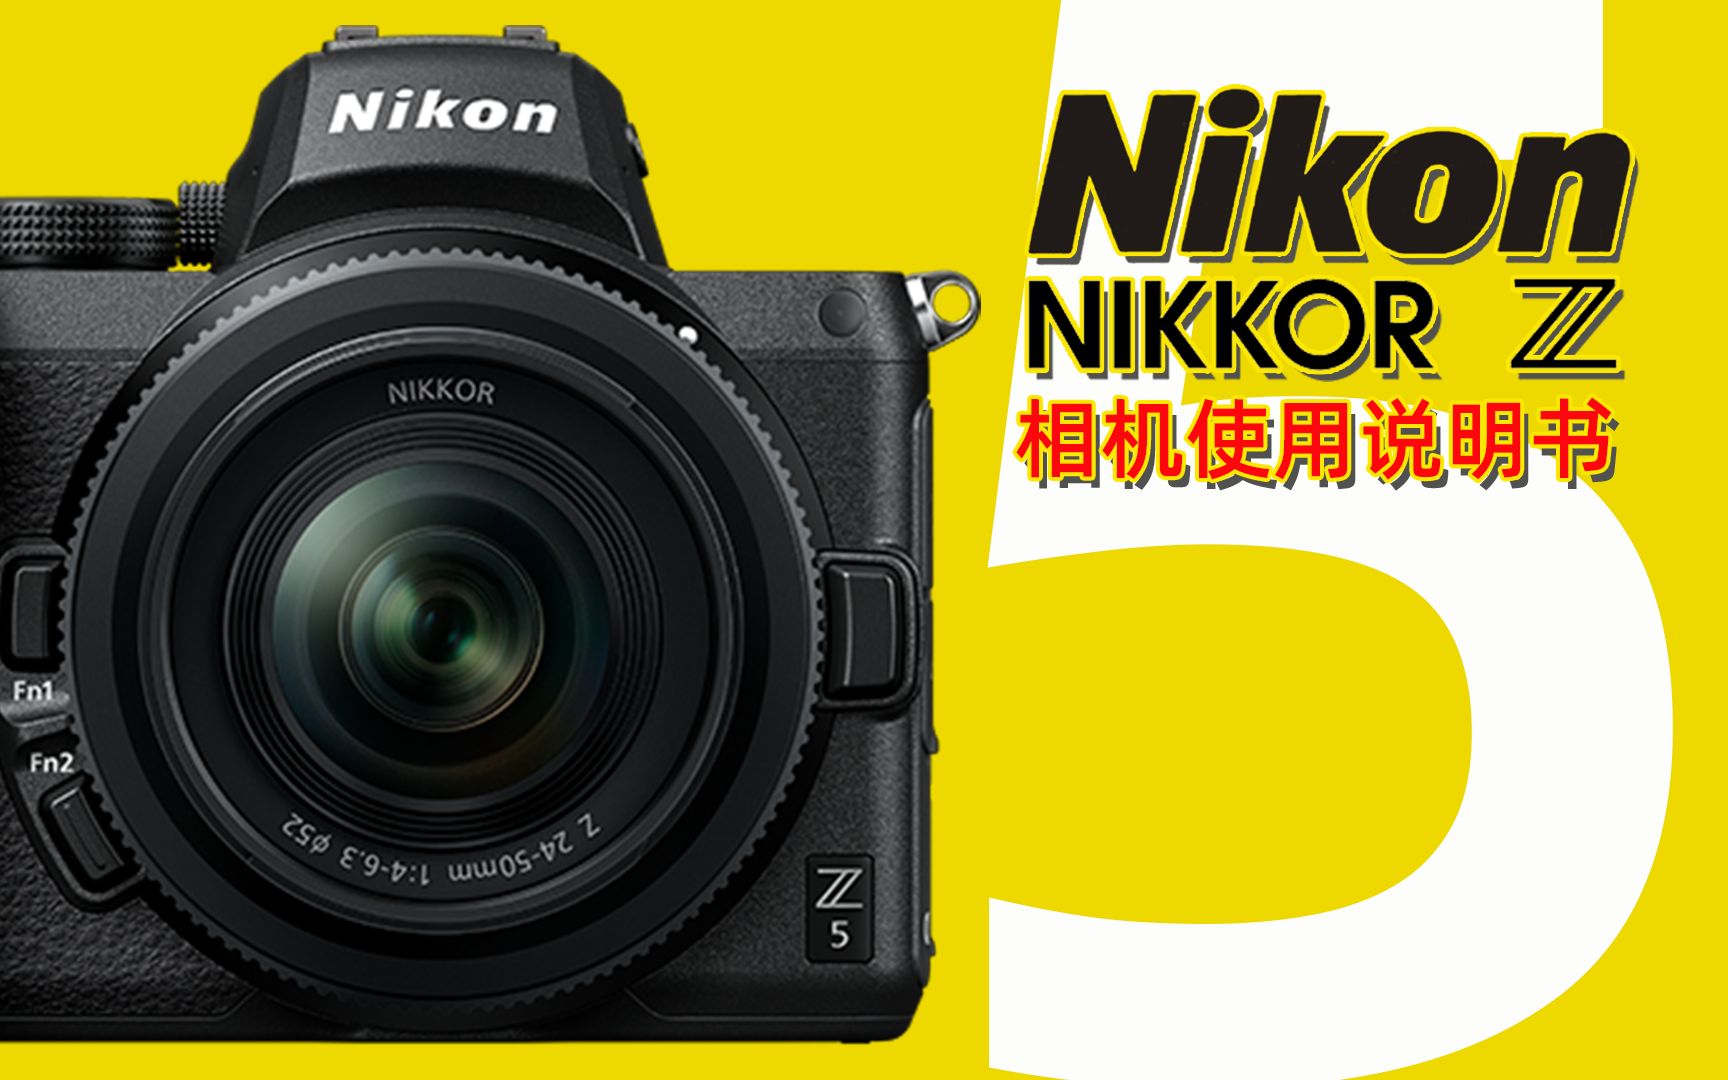 【全14集】Nikon尼康Z5相机使用说明书 【全网首发】